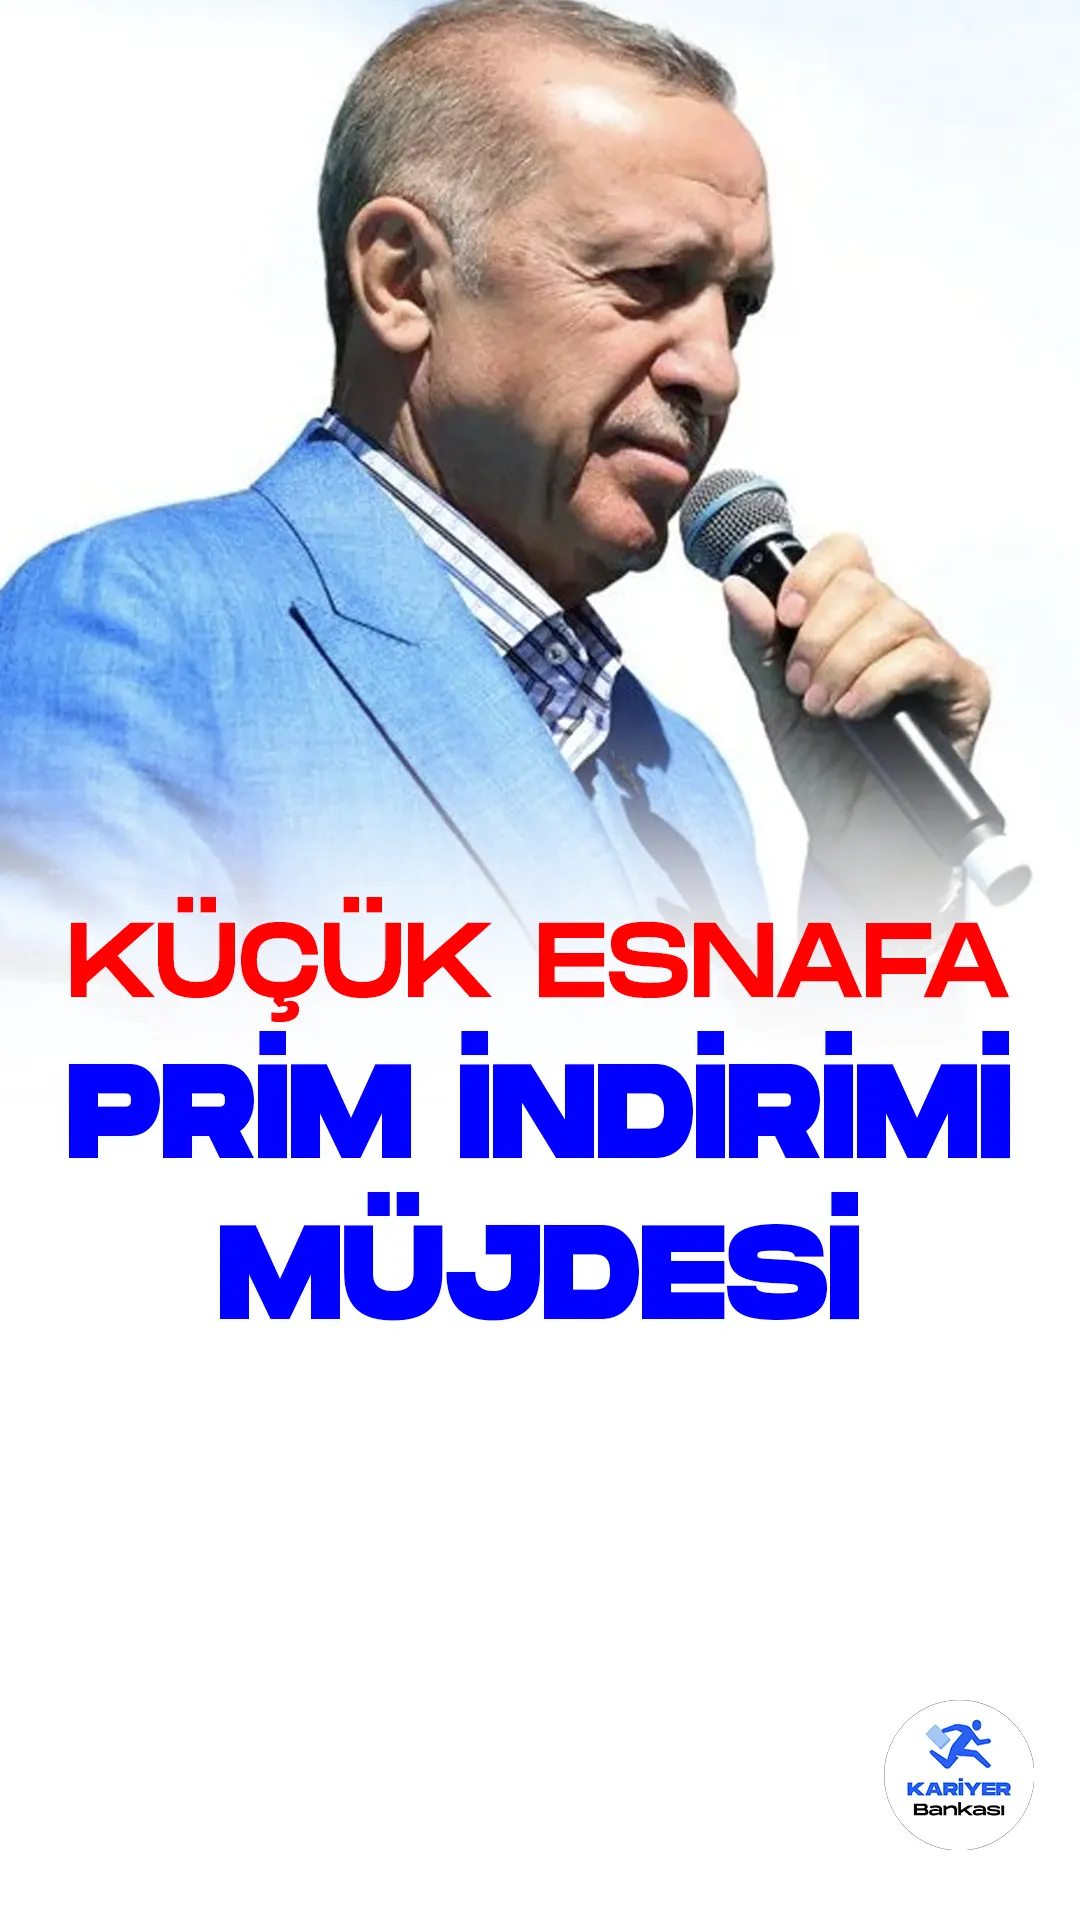 Küçük Esnaflara 7 Bin 200 Günlük Prim İndirimi Müjdesi.Cumhurbaşkanı Recep Tayyip Erdoğan, Kayseri Cumhuriyet Meydanı'nda gerçekleştirdiği konuşmada, küçük esnaflara yönelik prim indirimi müjdesini duyurdu.